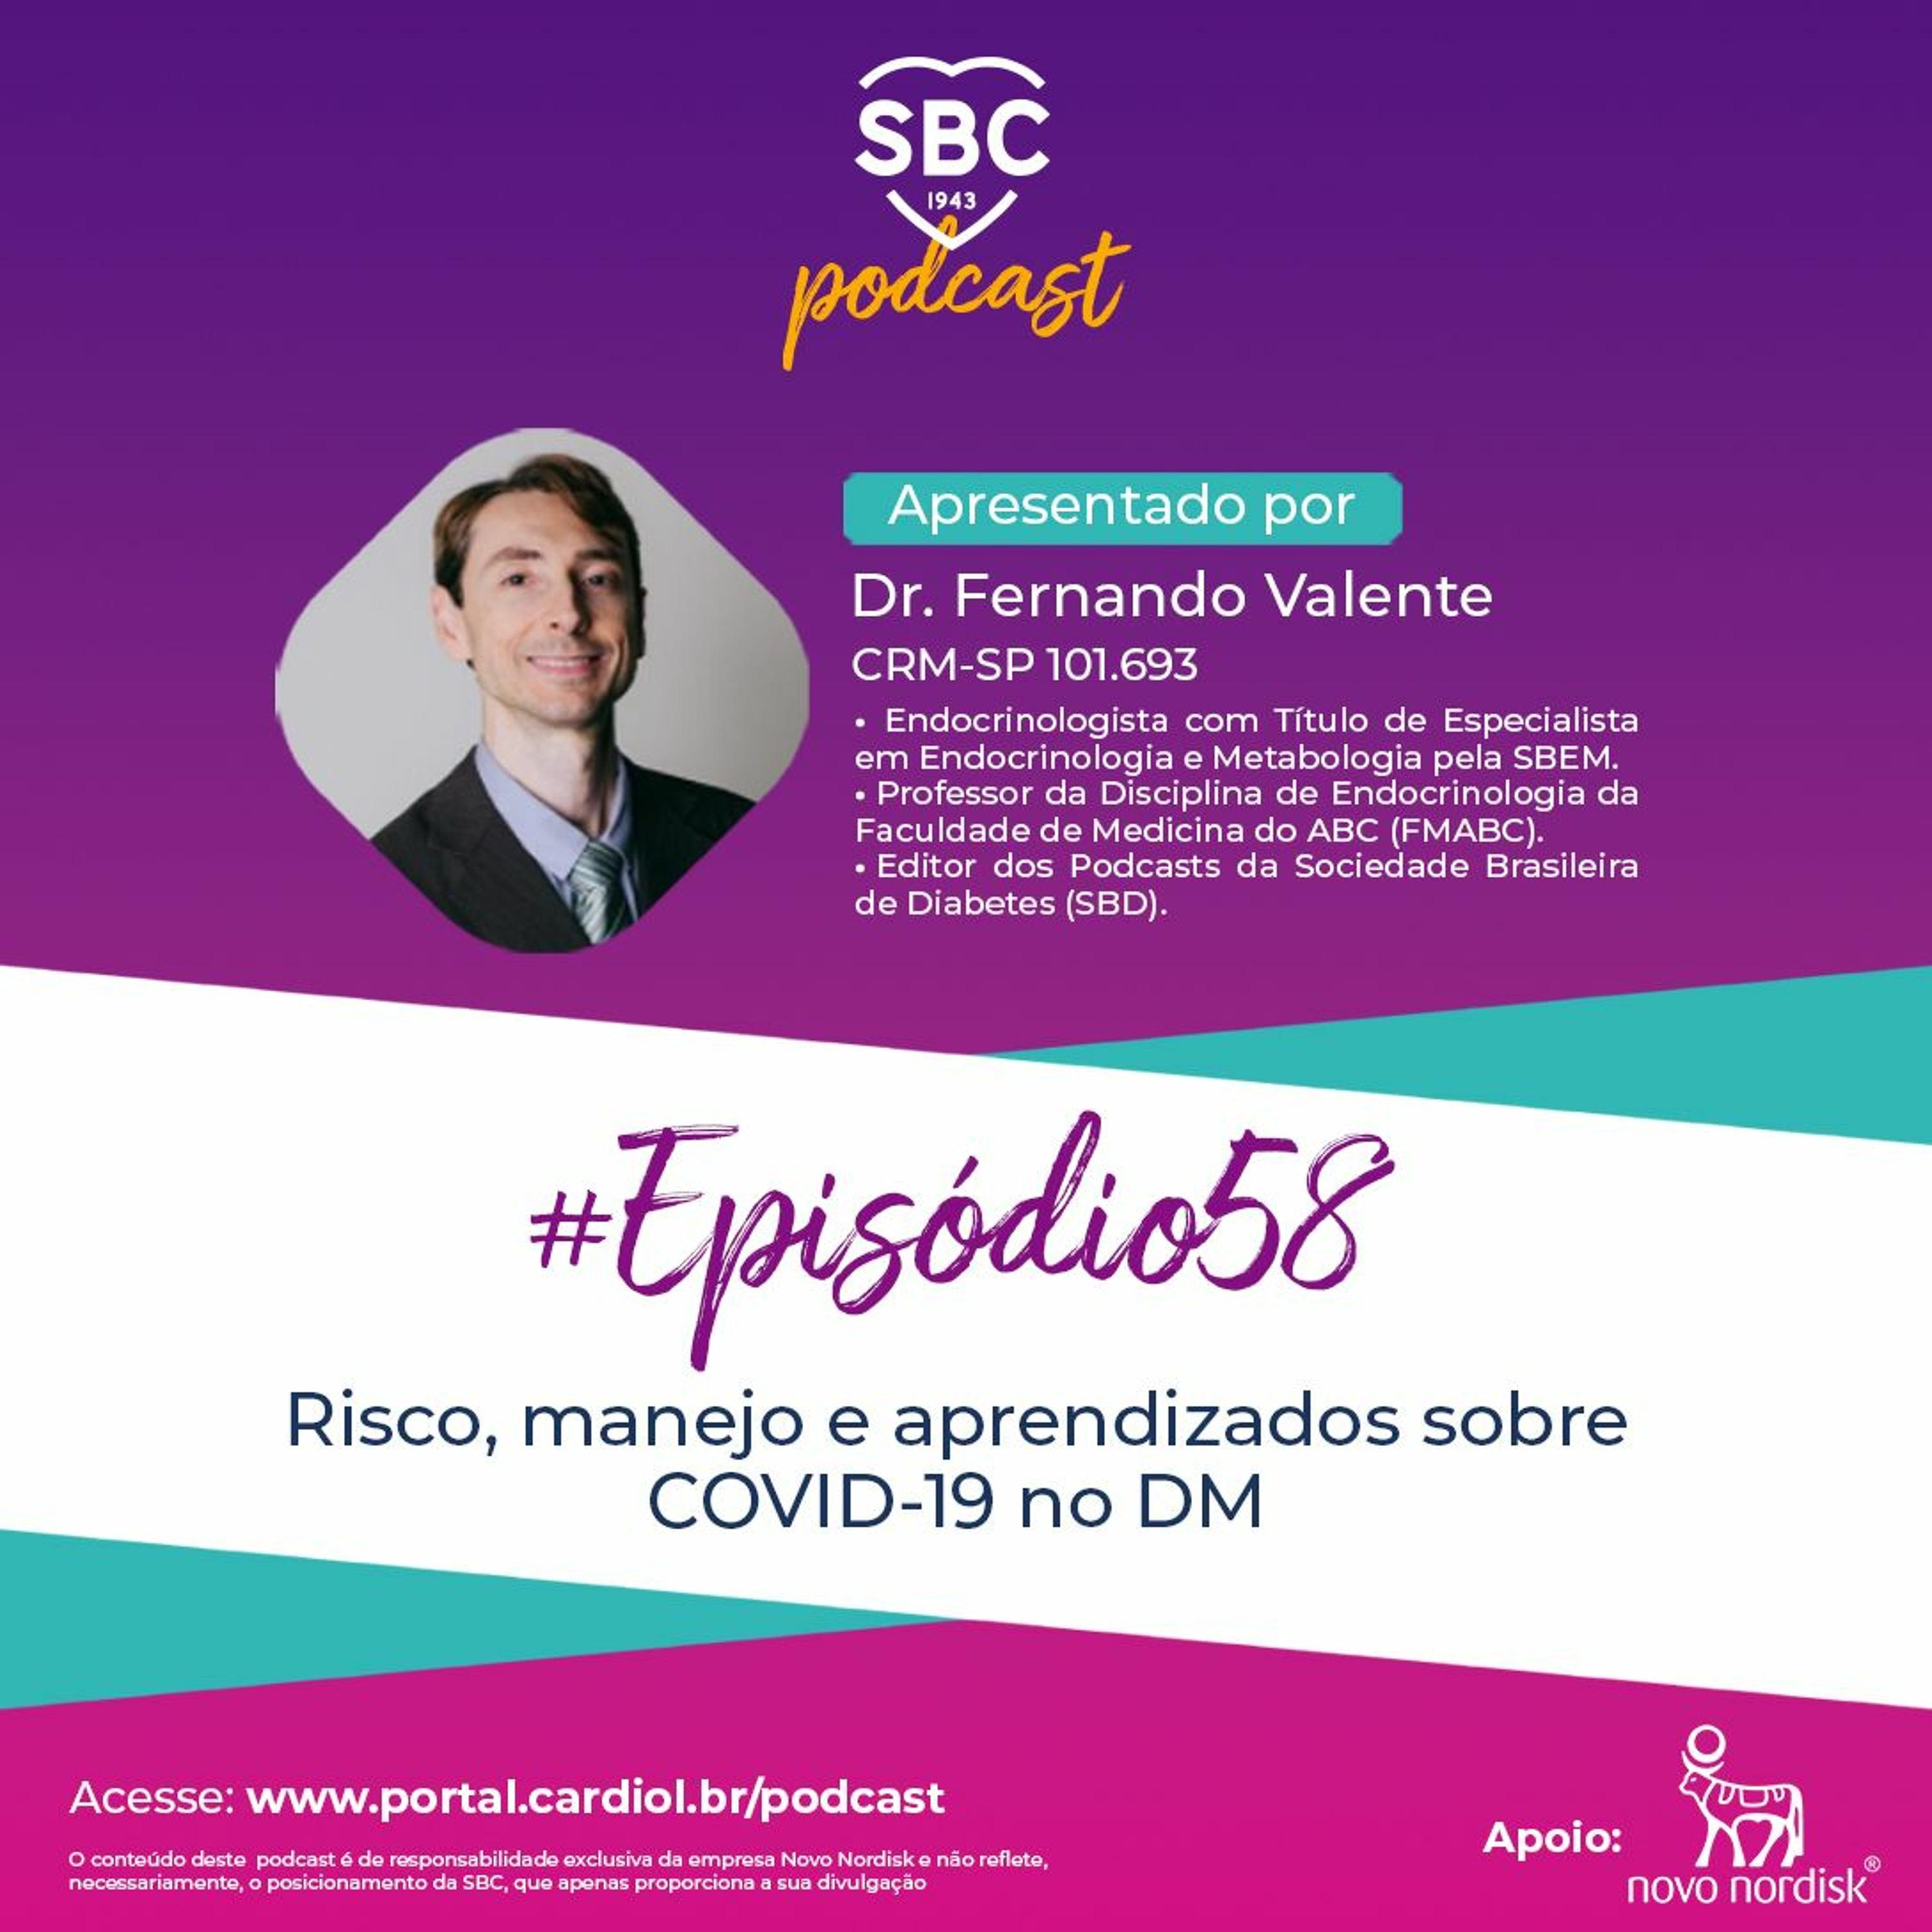 Neste episódio, o Dr. Fernando Valente abordará o Risco, manejo e aprendizados sobre COVID-19 no DM.